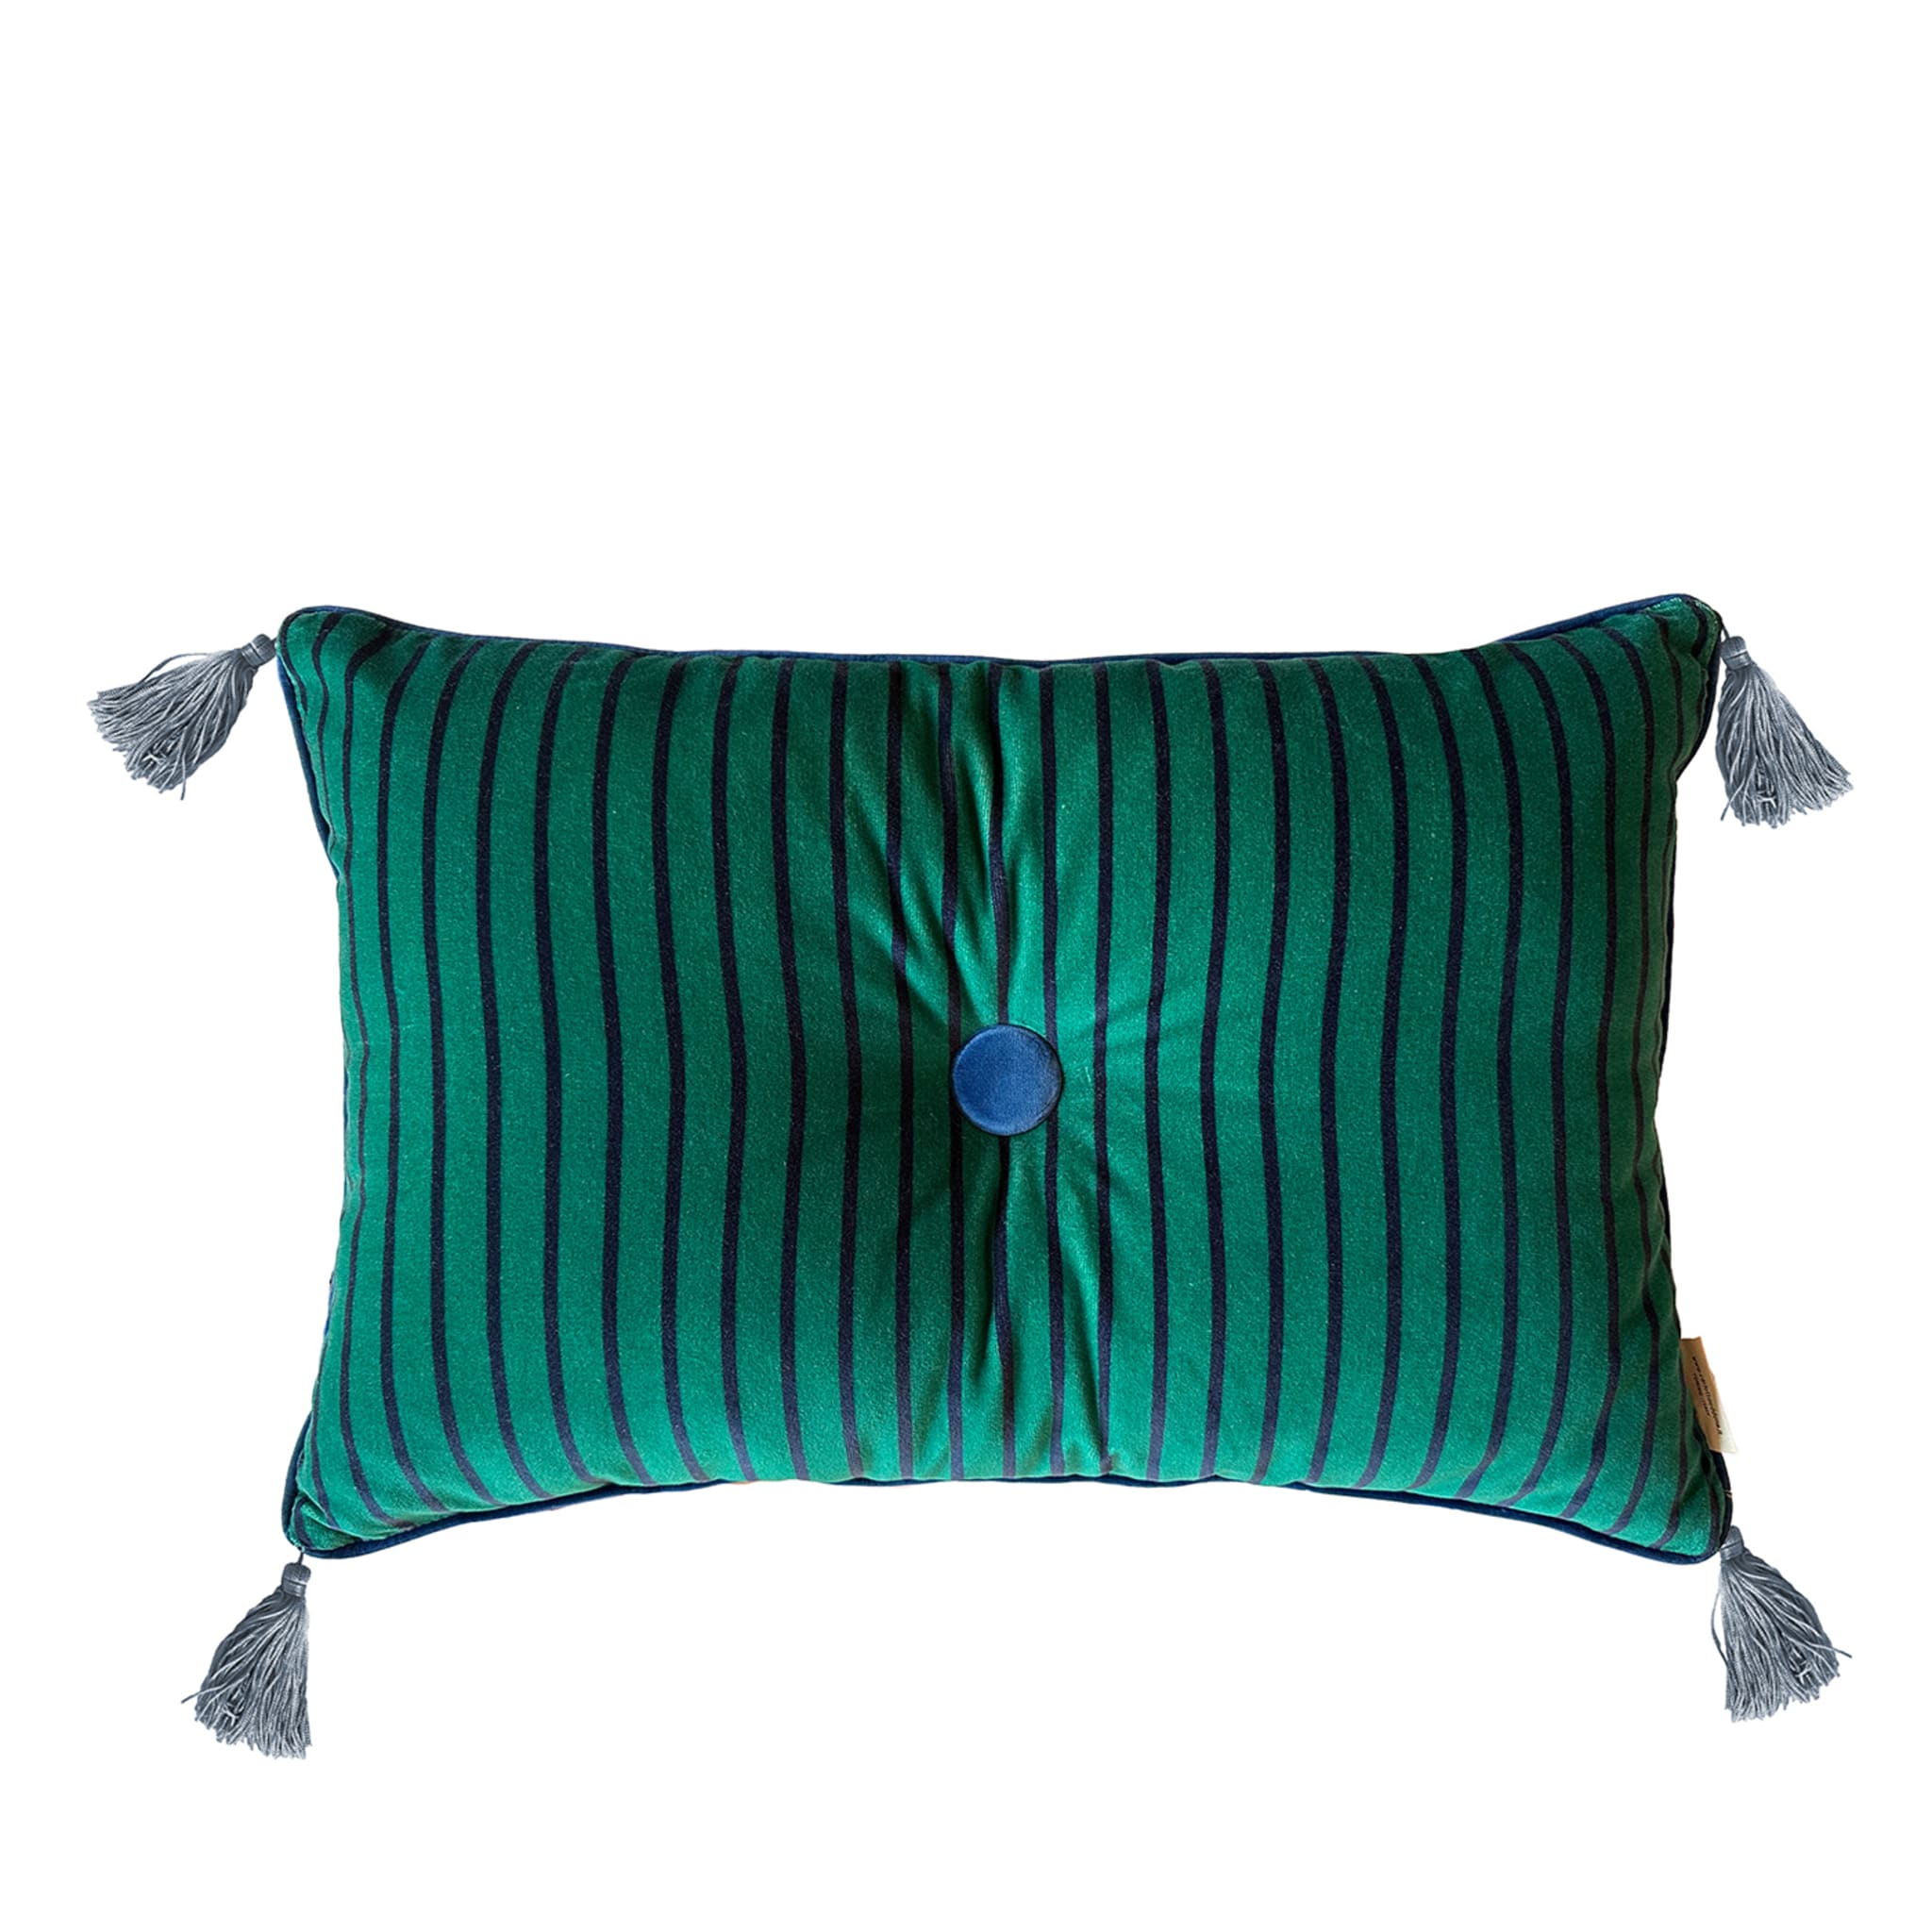 Cuscino Sweet Pillow rettangolare a righe verde acqua - Vista principale